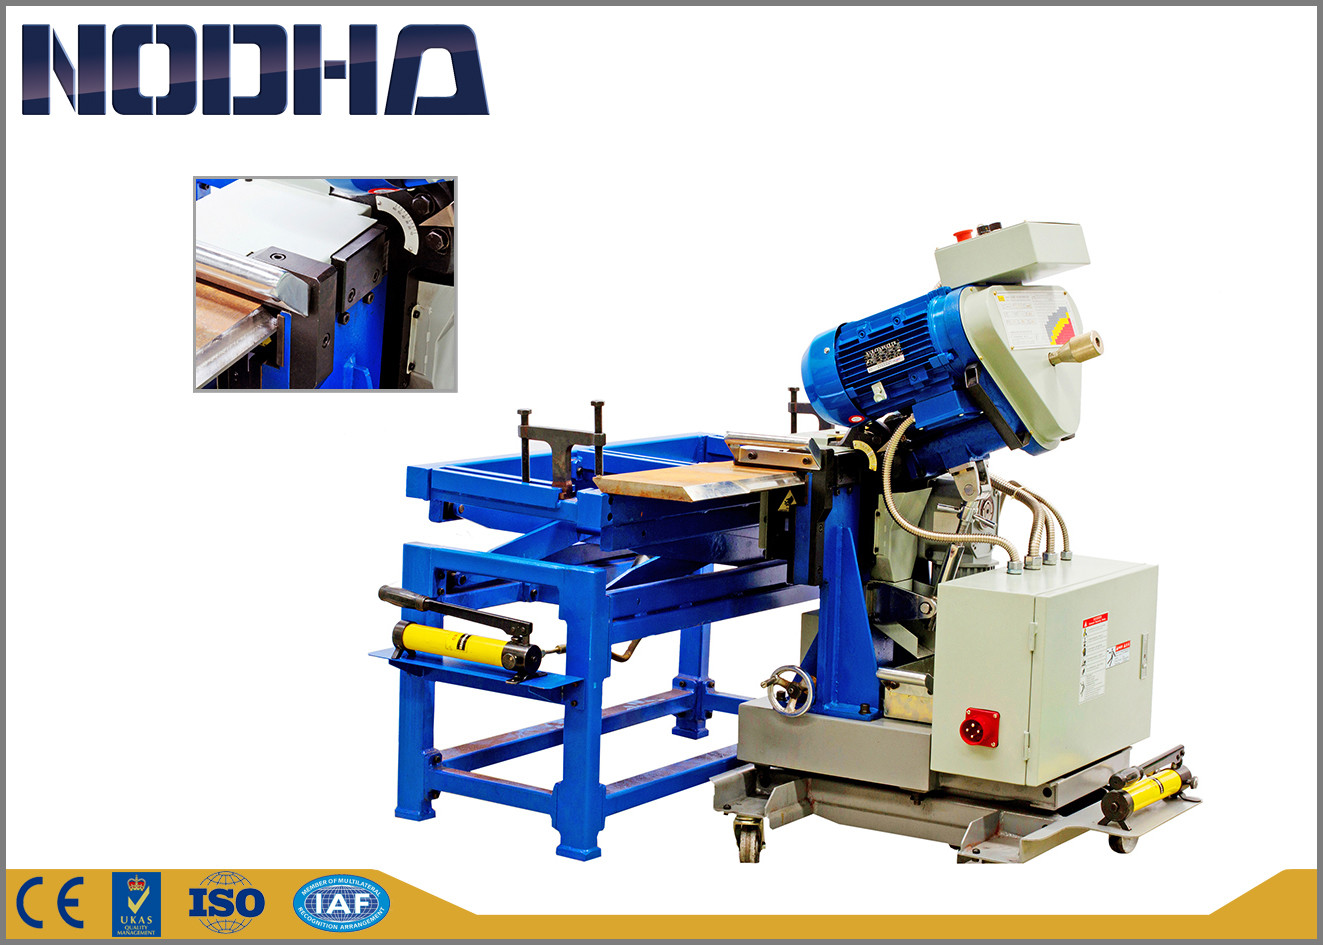 Machine van het de Randmalen van NODHA de Draagbare, Automatische de Motorsnelheid van Malenmachine 750-1050 R/Min